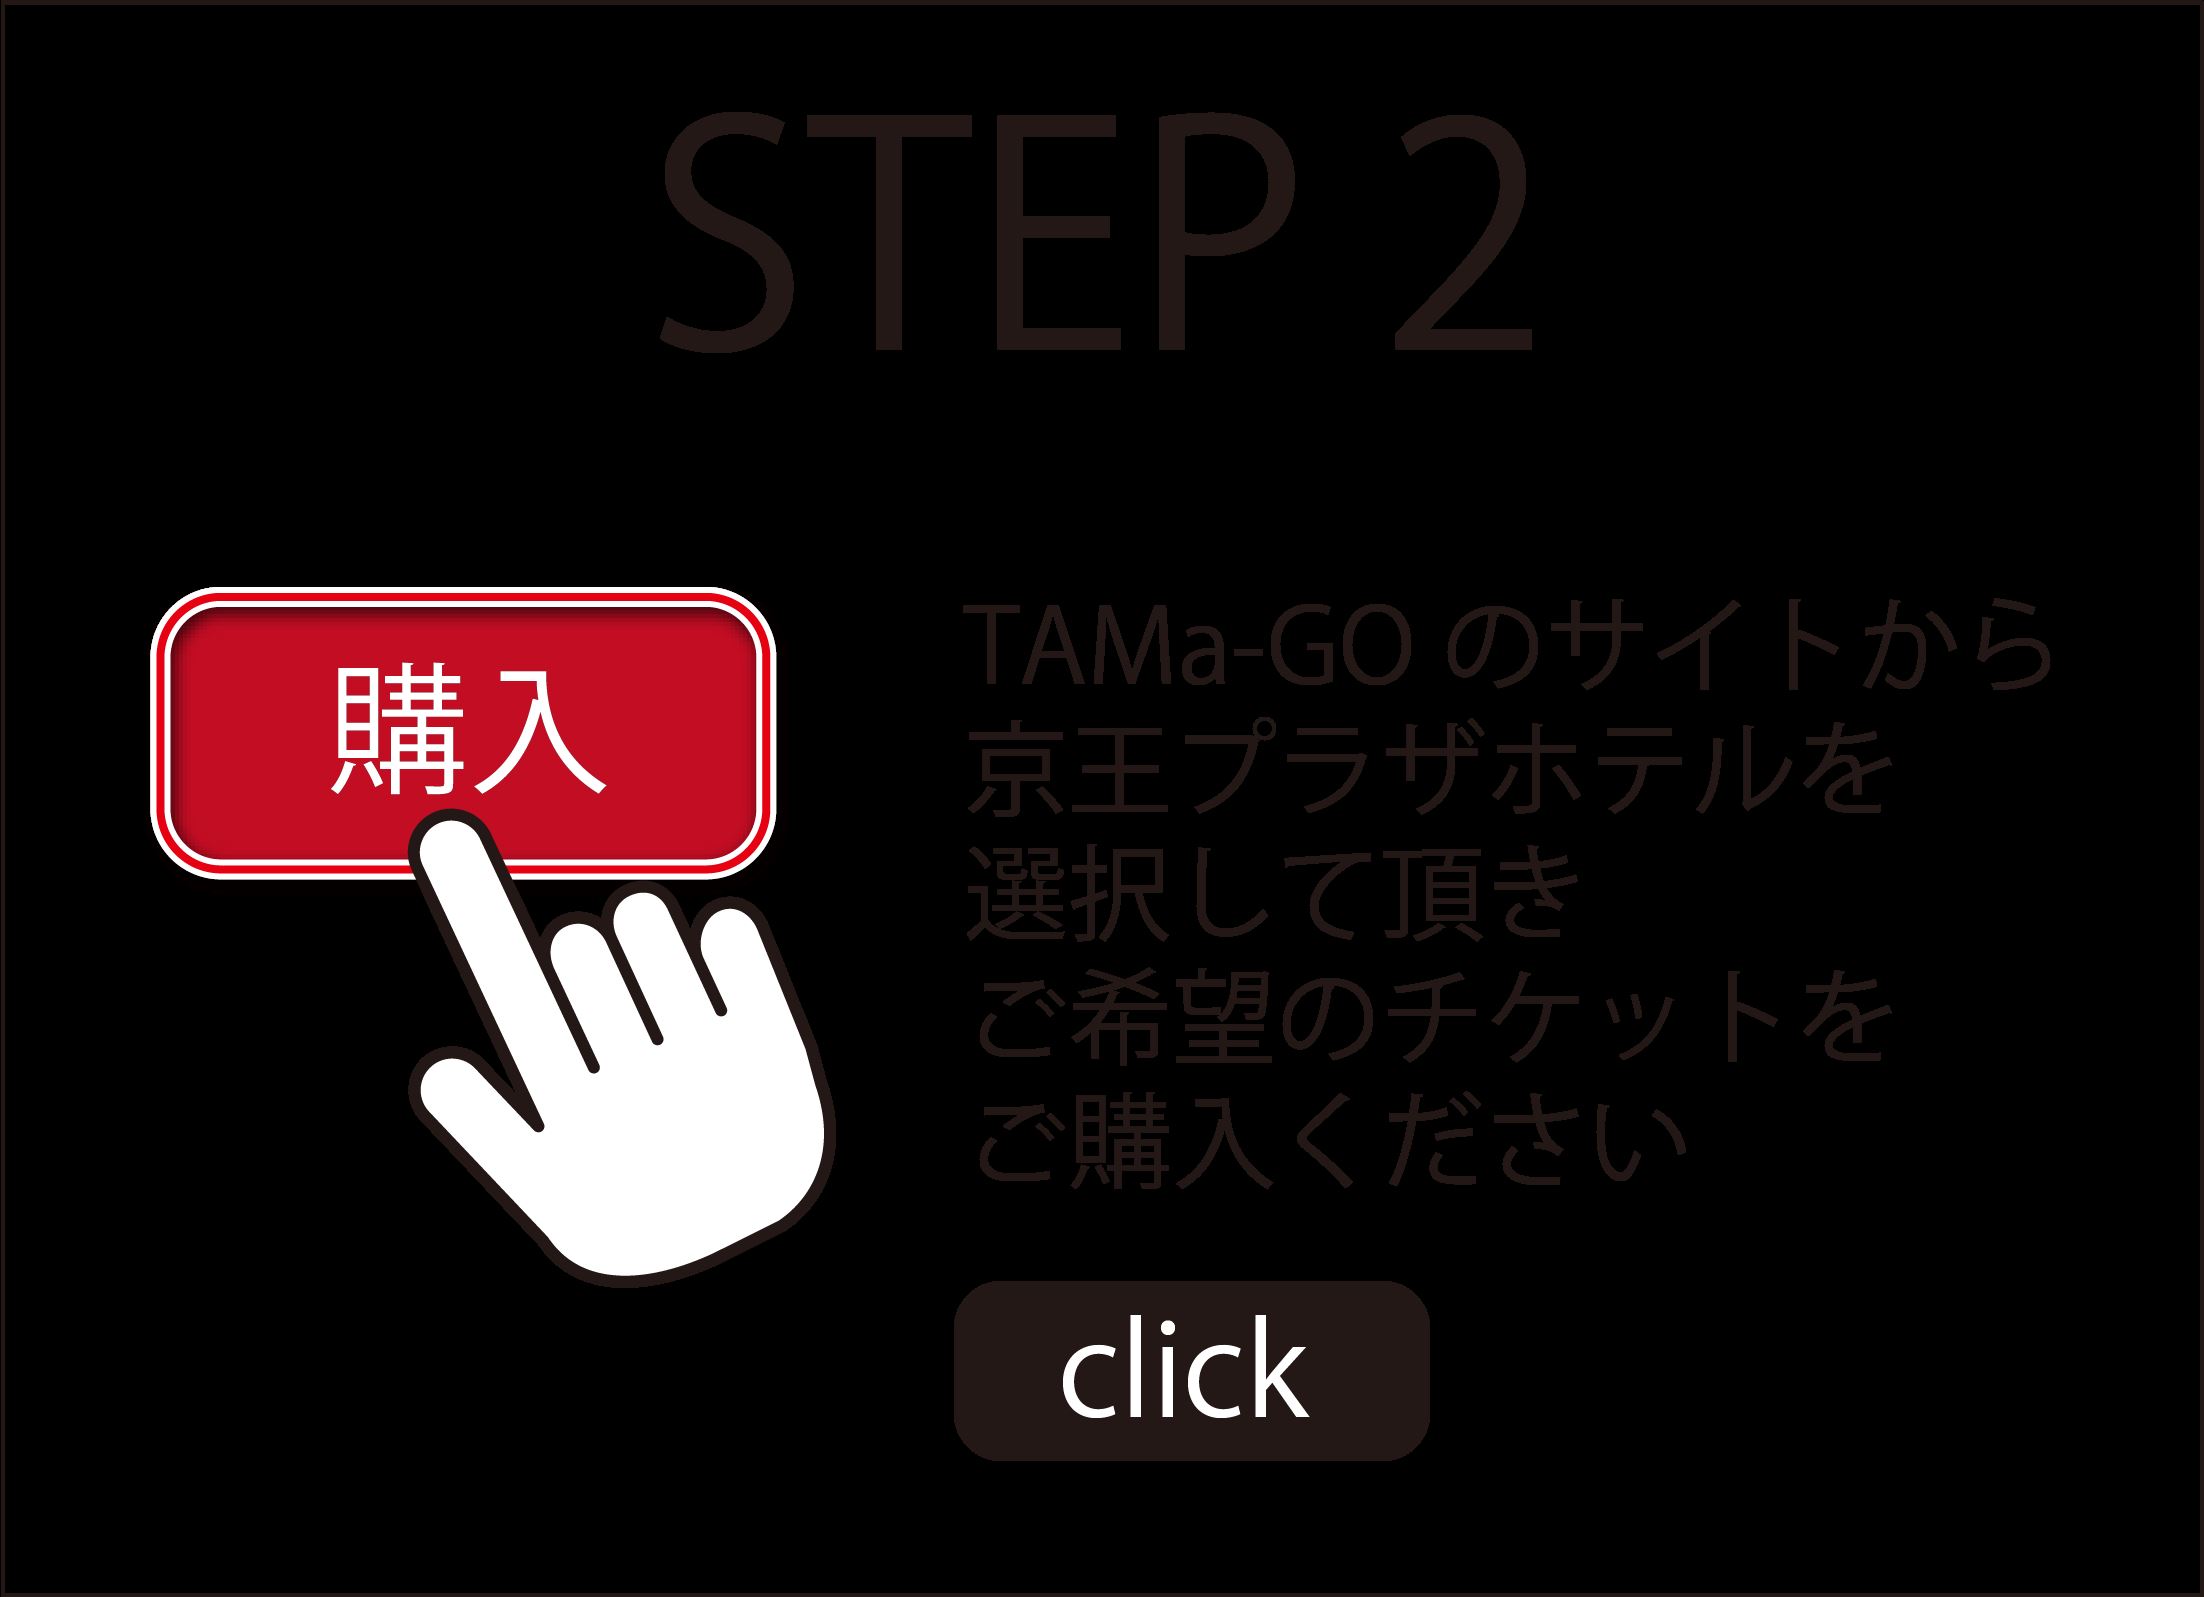 STEP 2 TAMa-GOのサイトから、リオ エース スロットを選択して頂き、ご希望のチケットをご購入ください